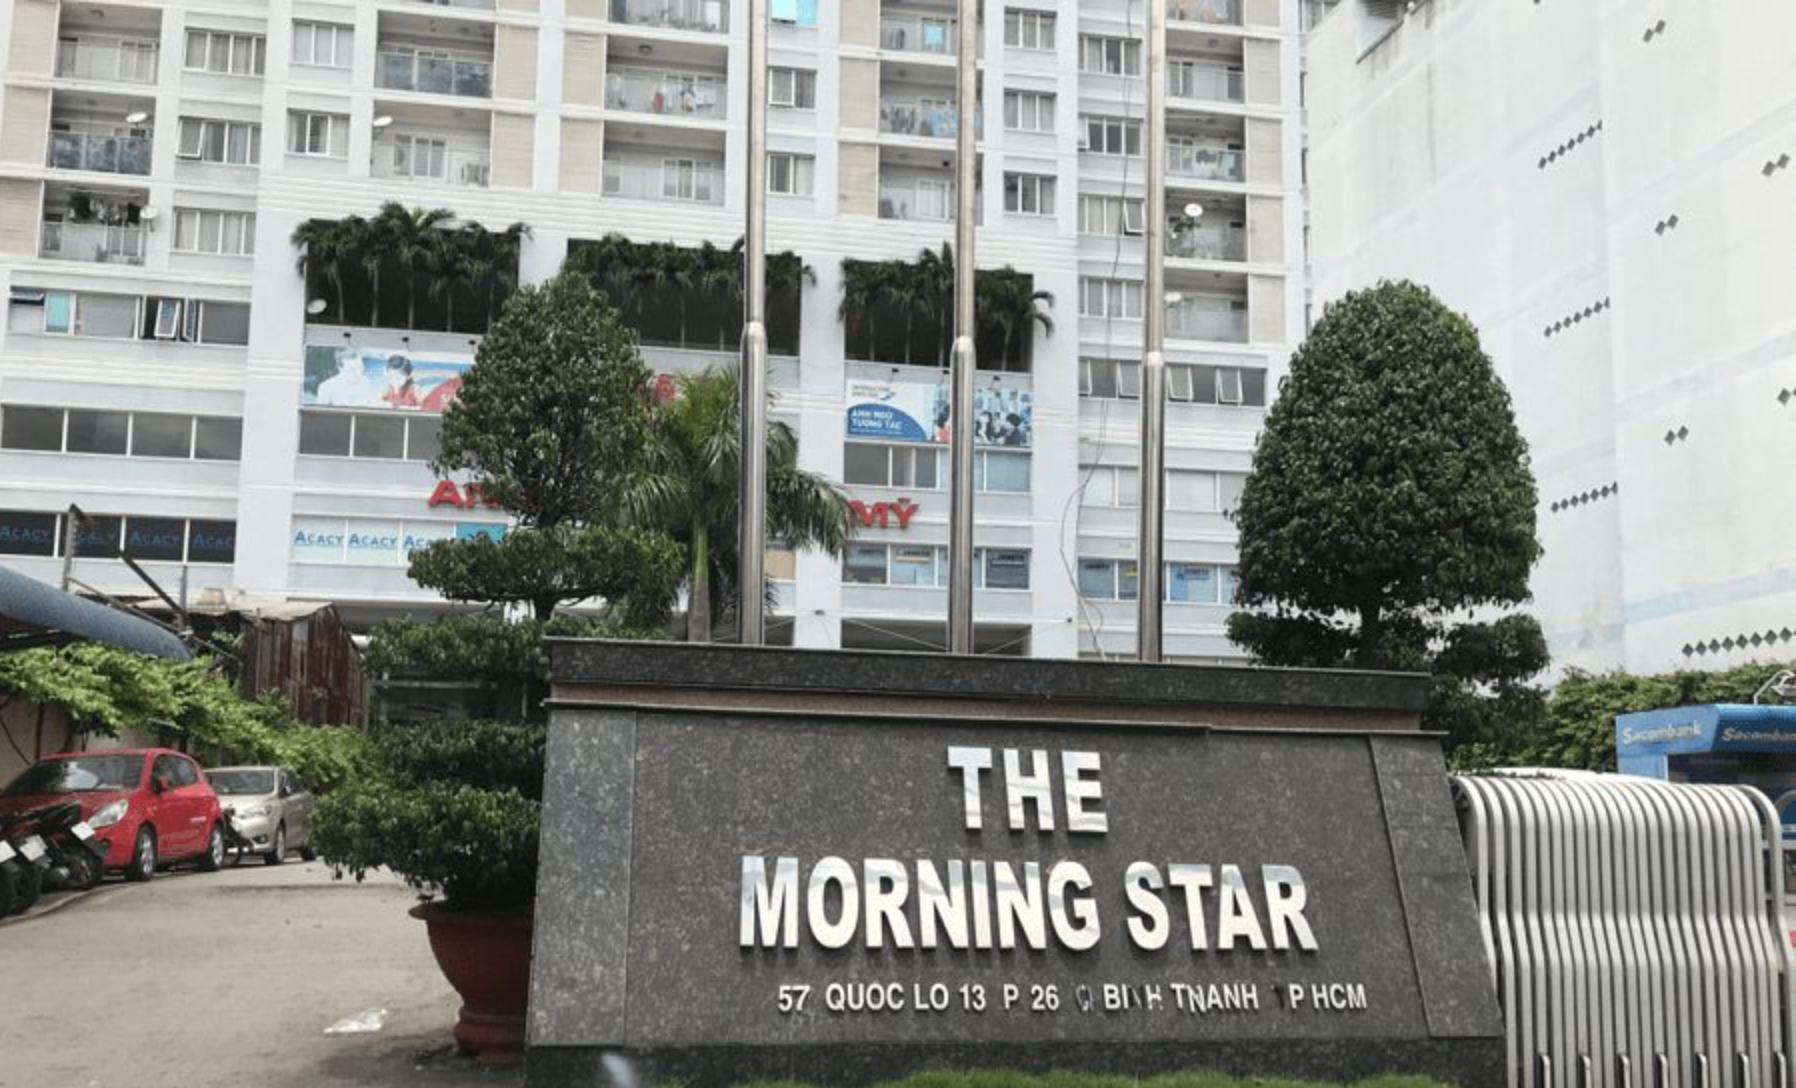 dia-chi-chung-cu-morning-star-quan-binh-thanh-chinh-xac-o-dau-onehousing-1